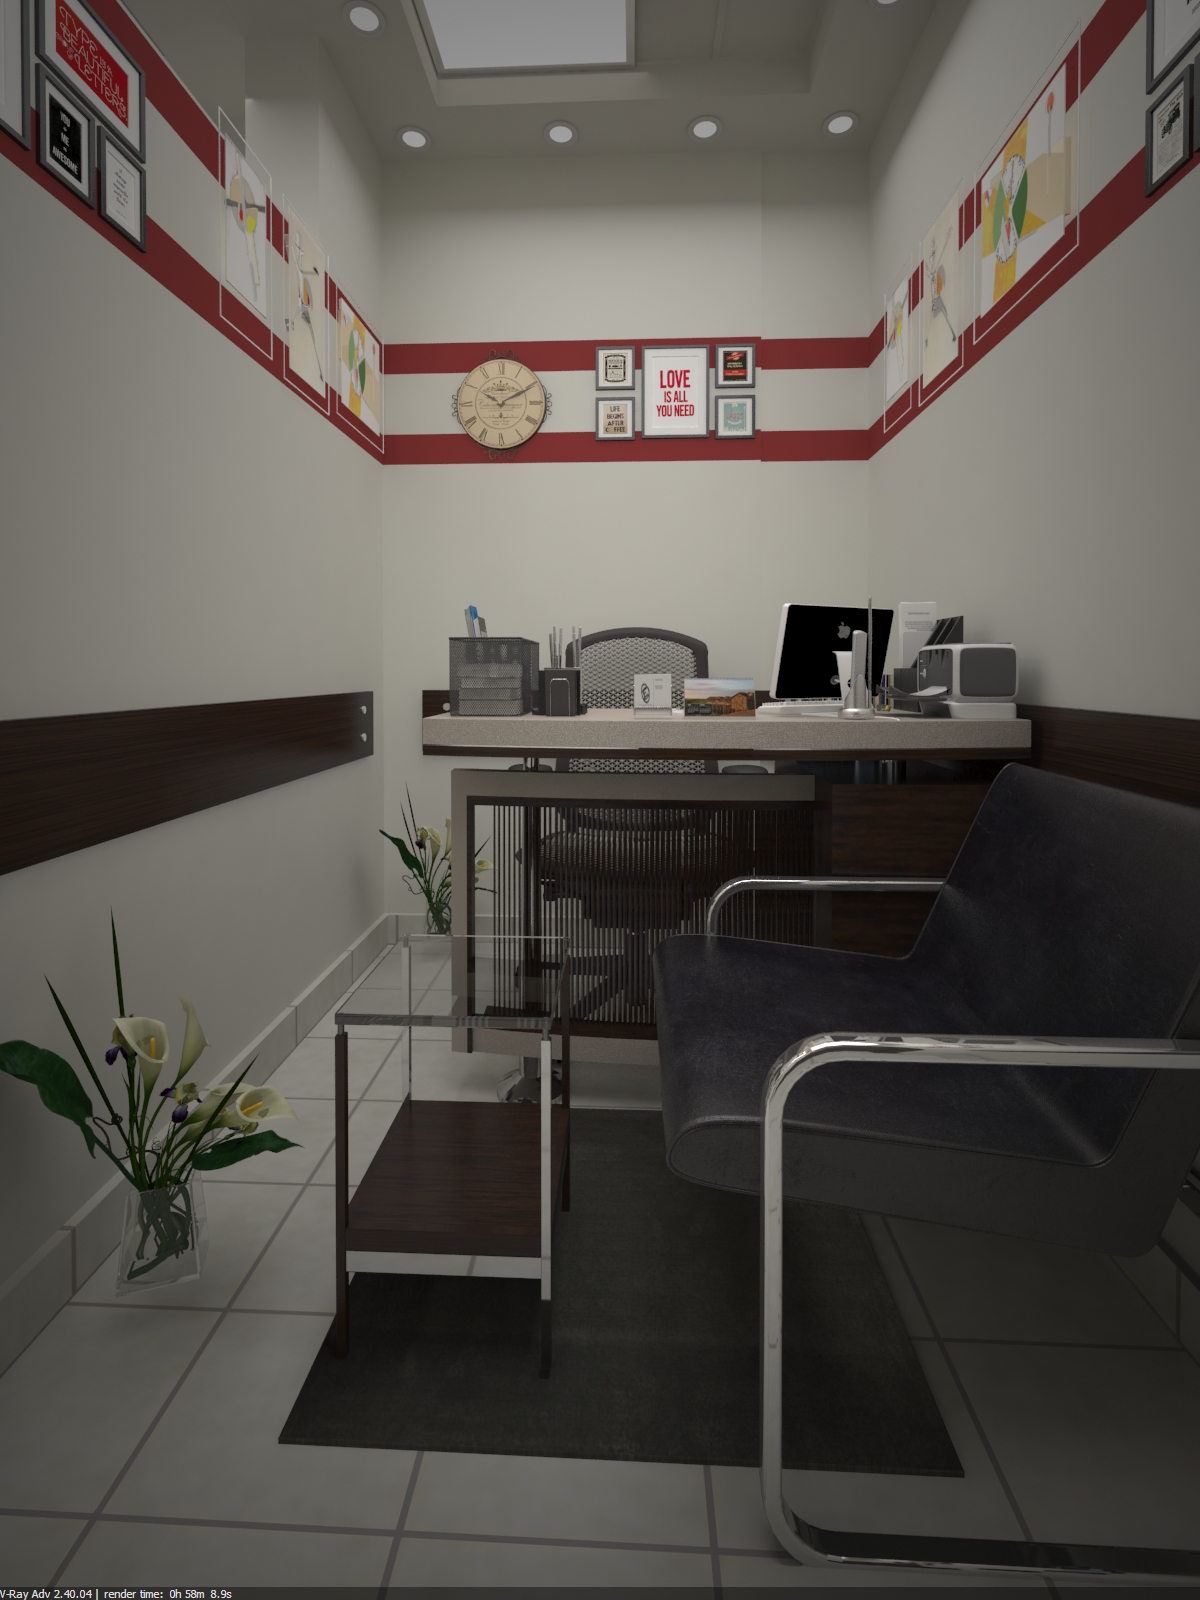 Interior Designs Office decor vray 3d max